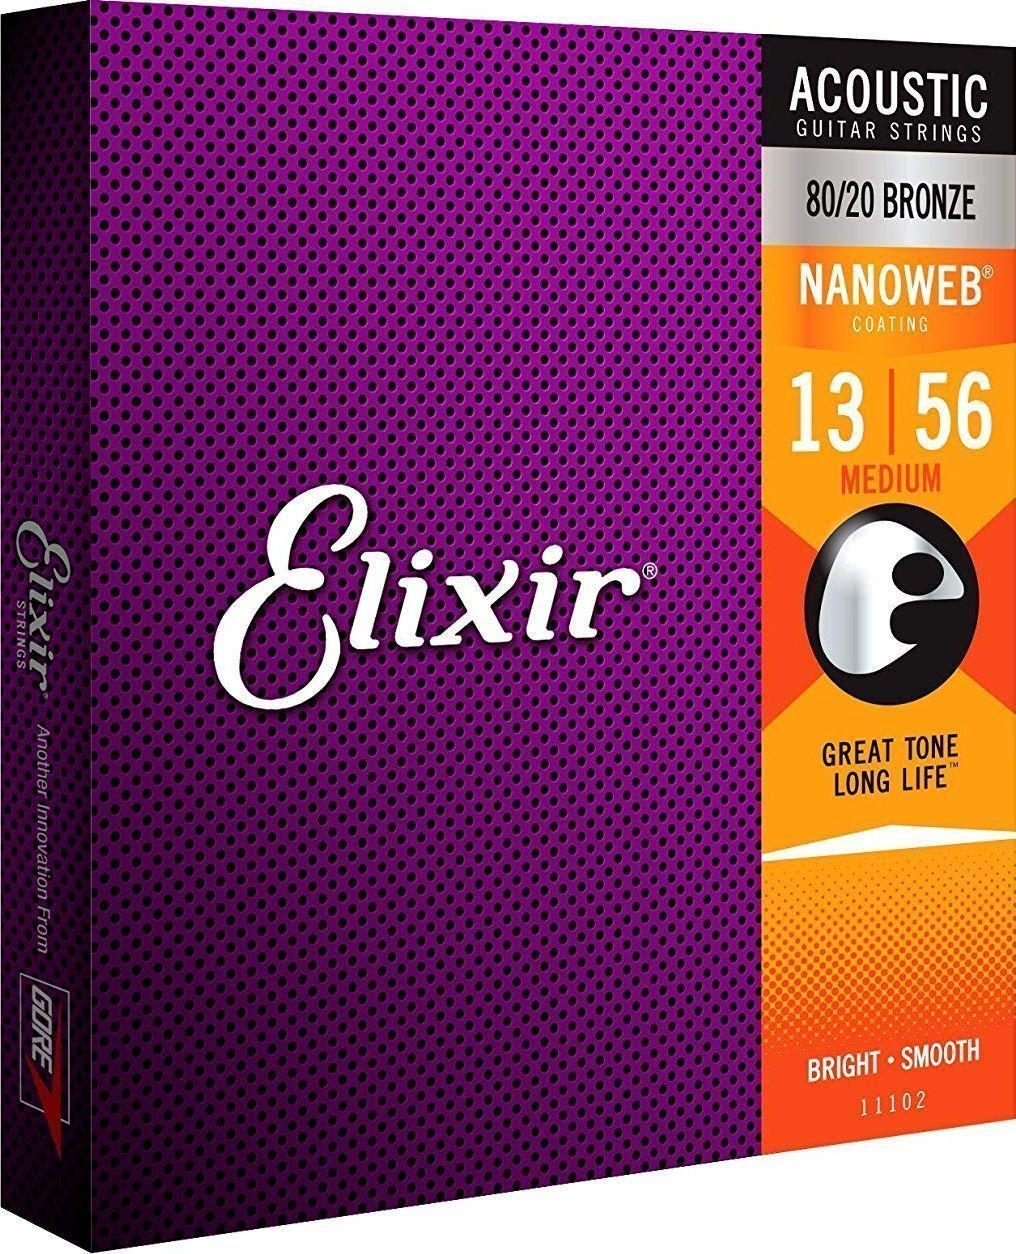 Snaren voor akoestische gitaar Elixir 11102 Nanoweb 13-56